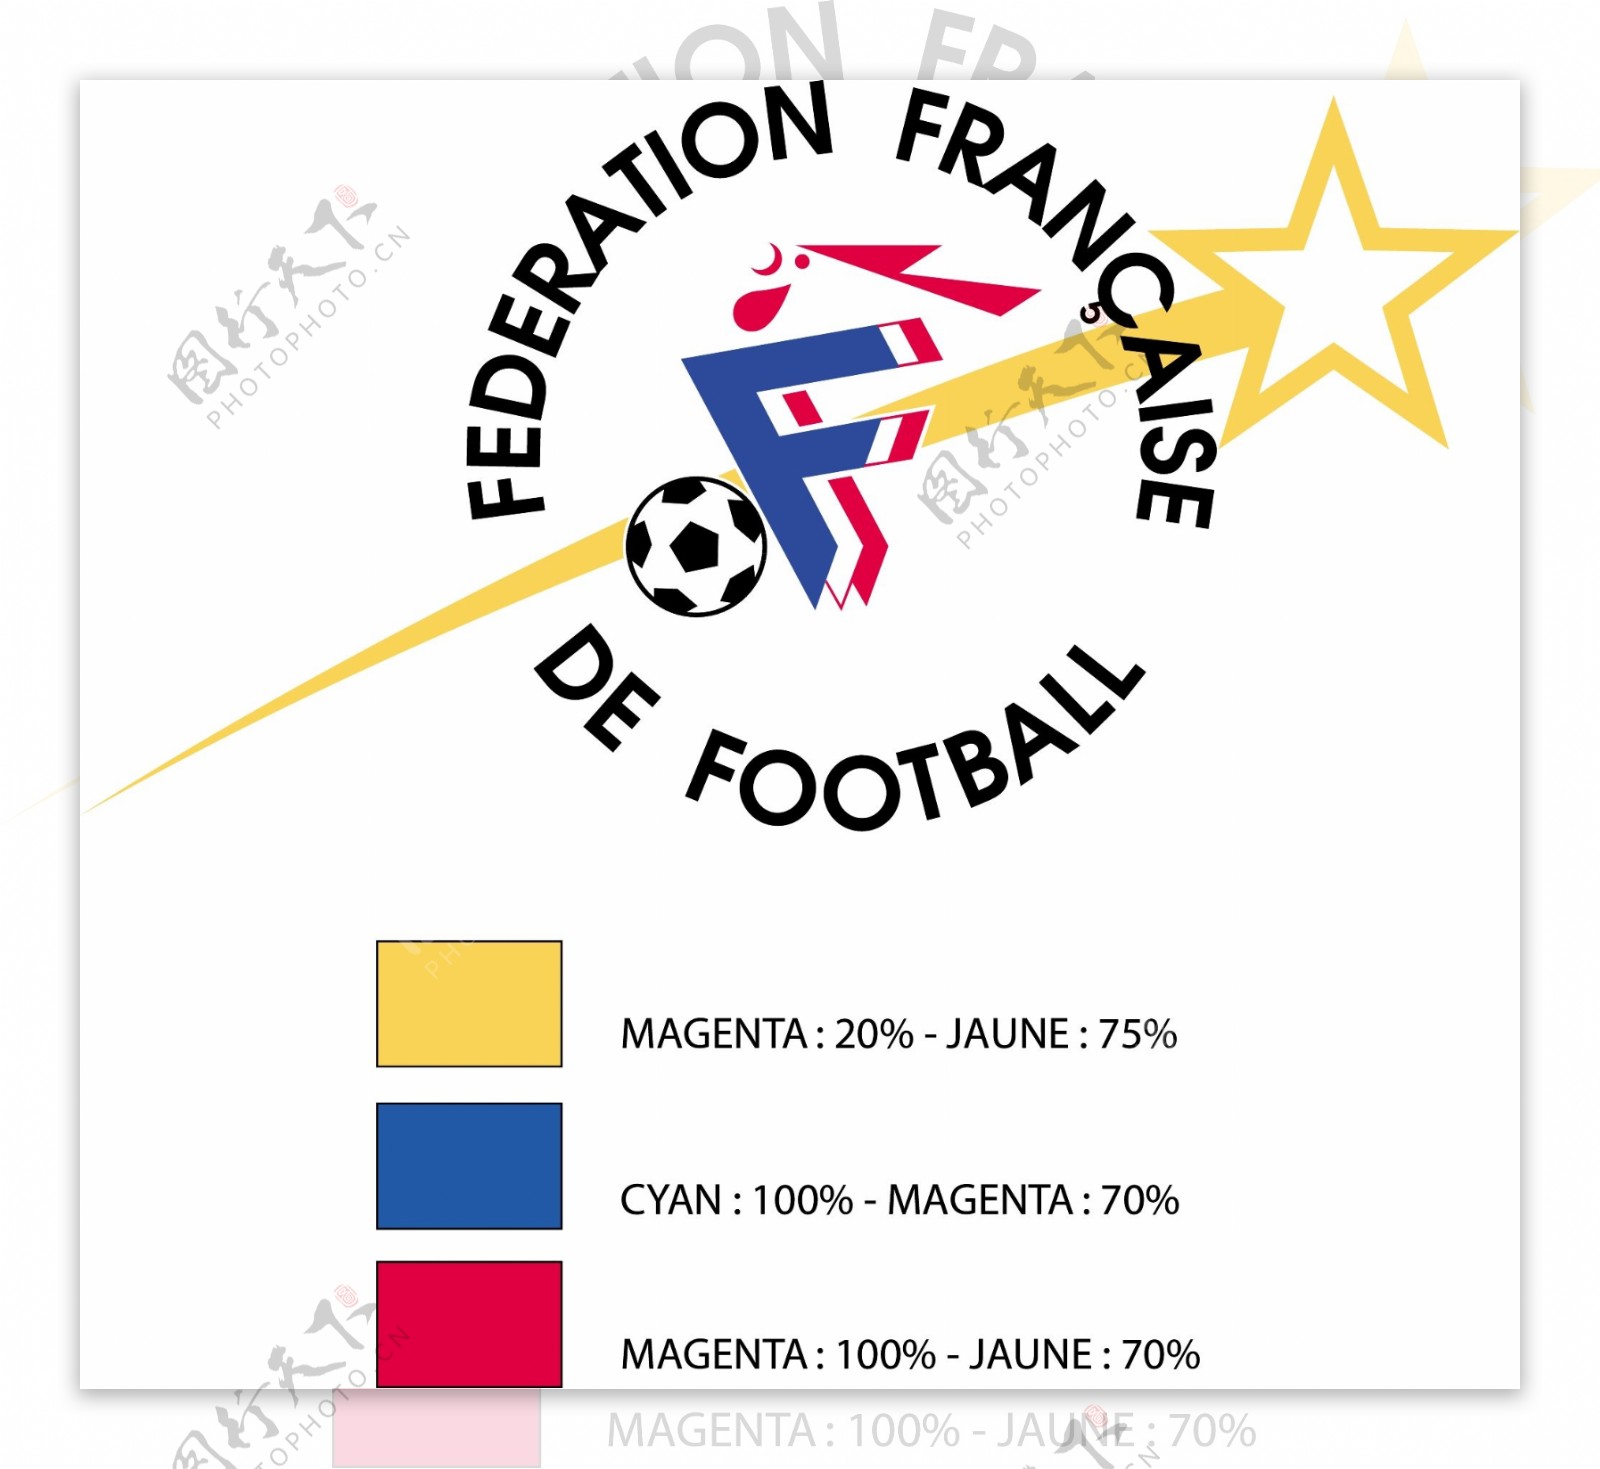 法国足球联合会